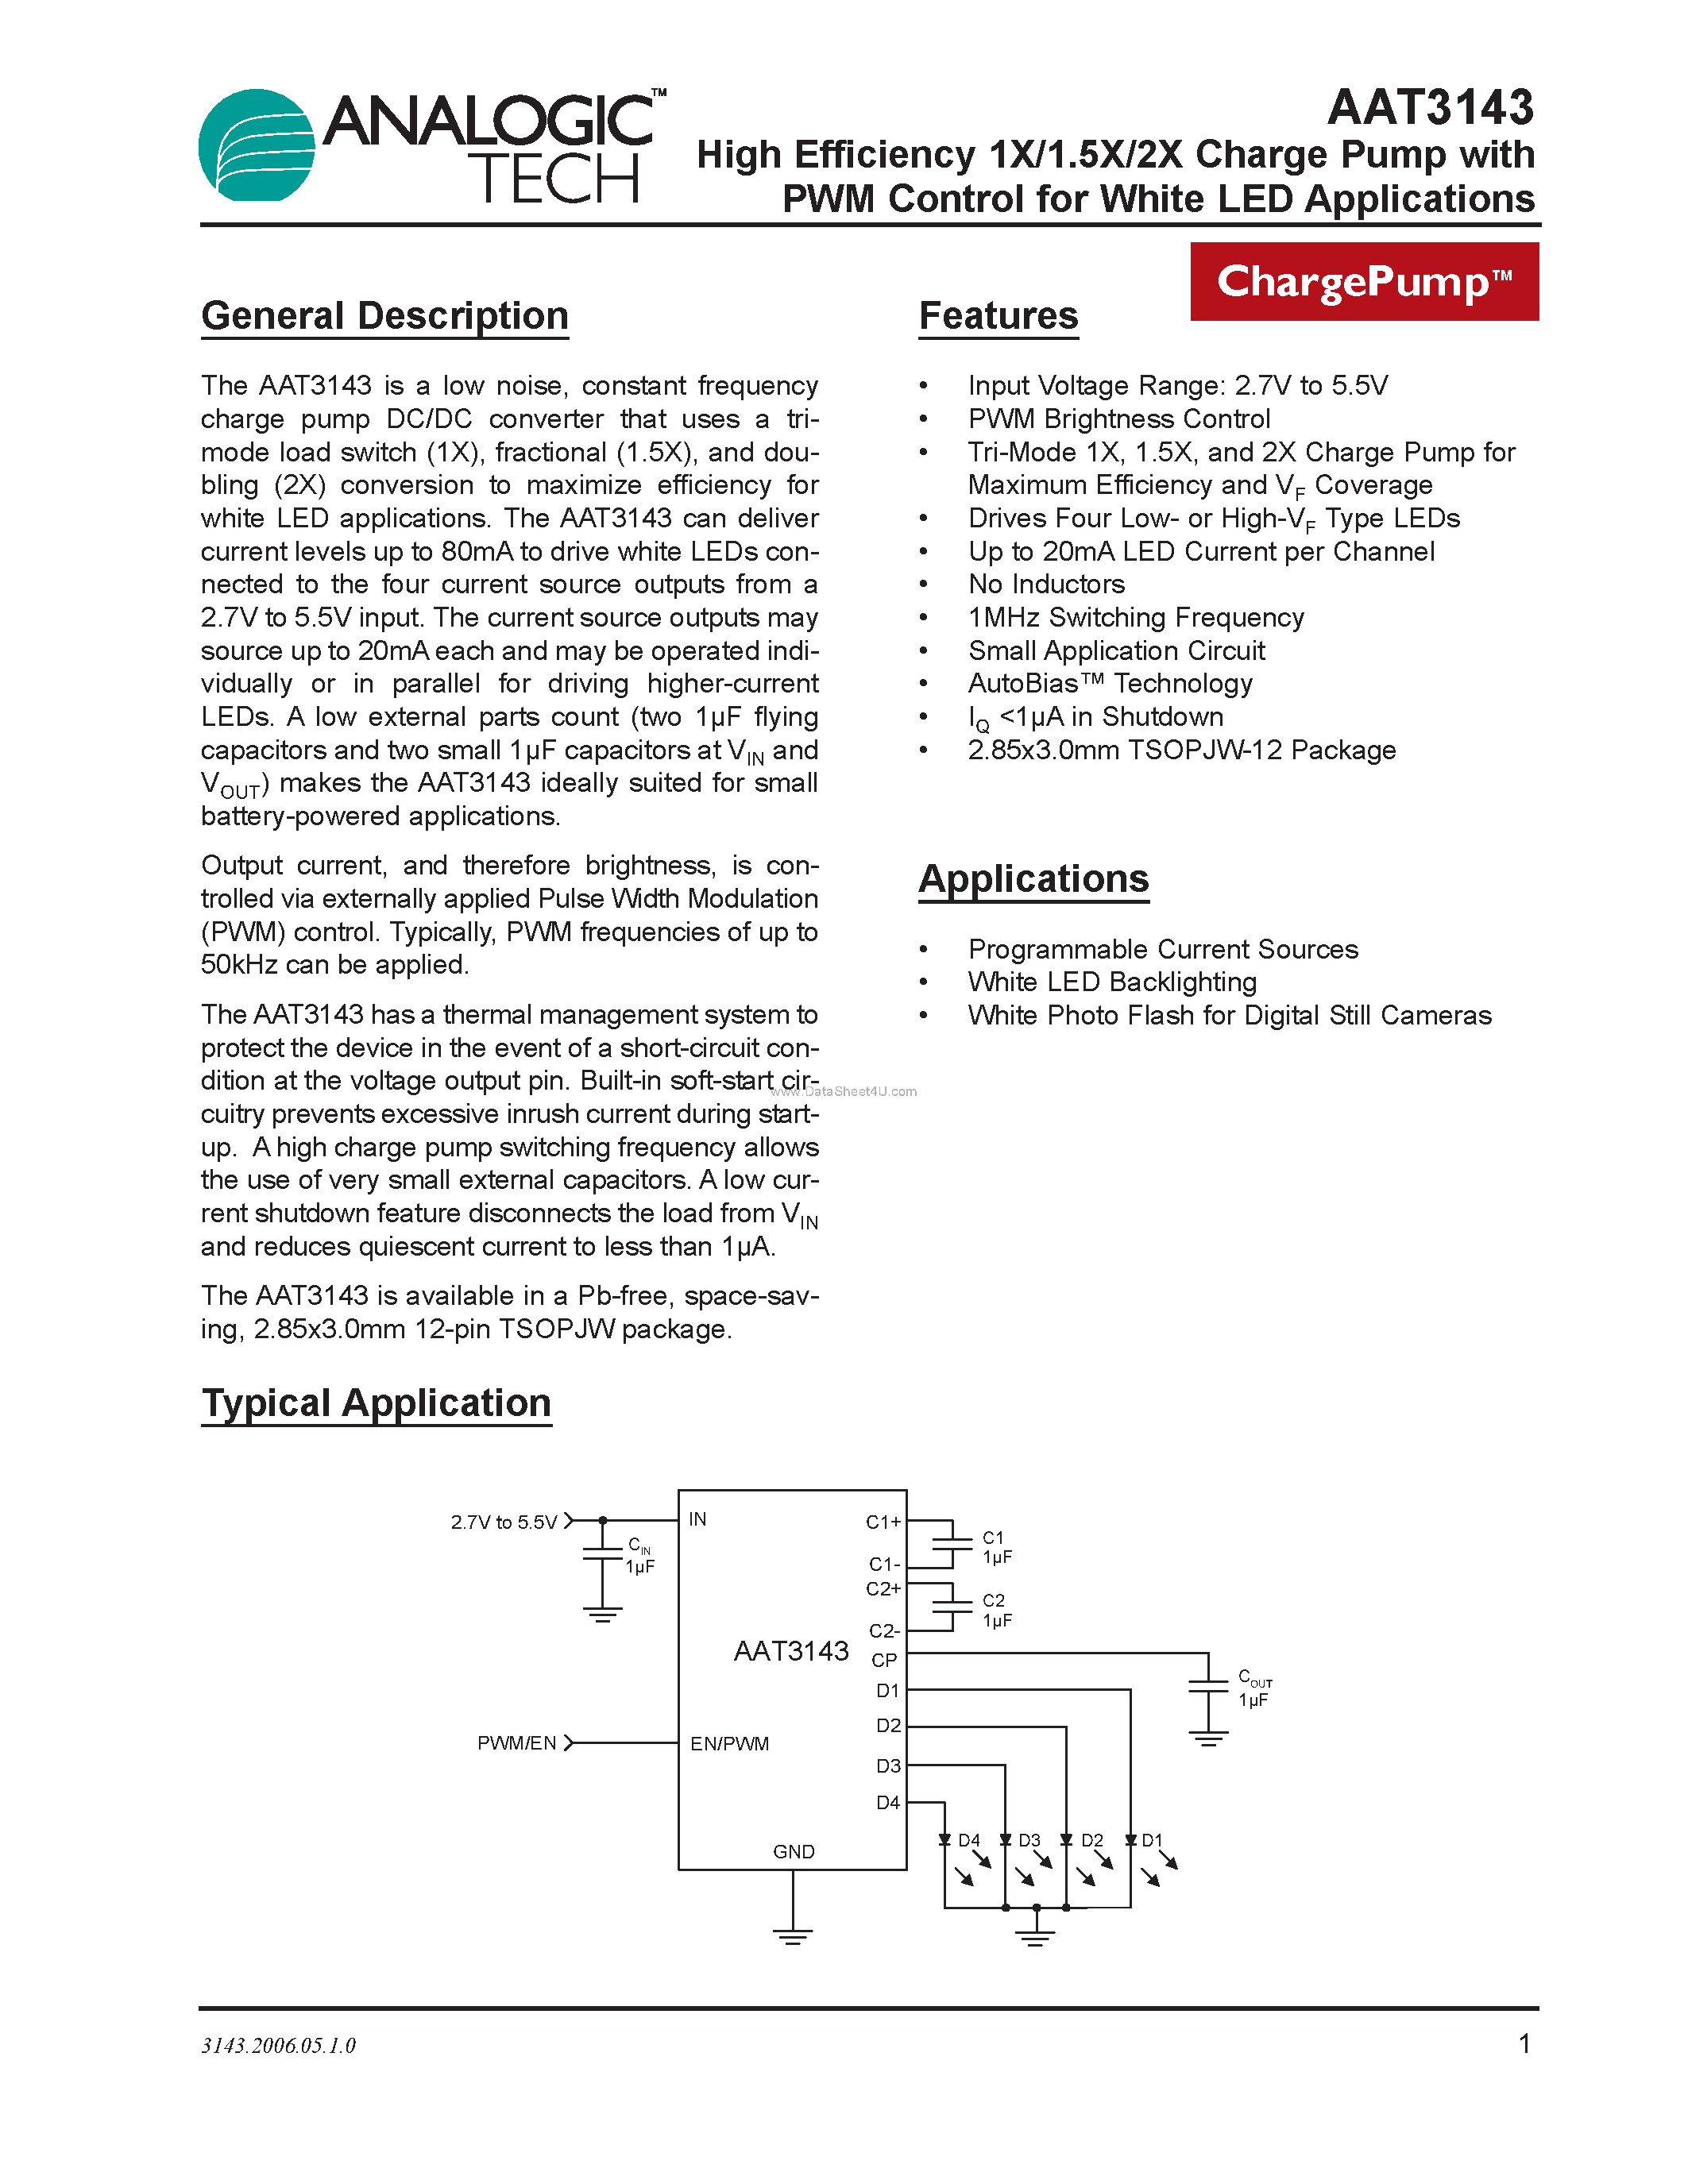 Даташит AAT3143 - High Efficiency 1X/1.5X/2X Charge Pump страница 1